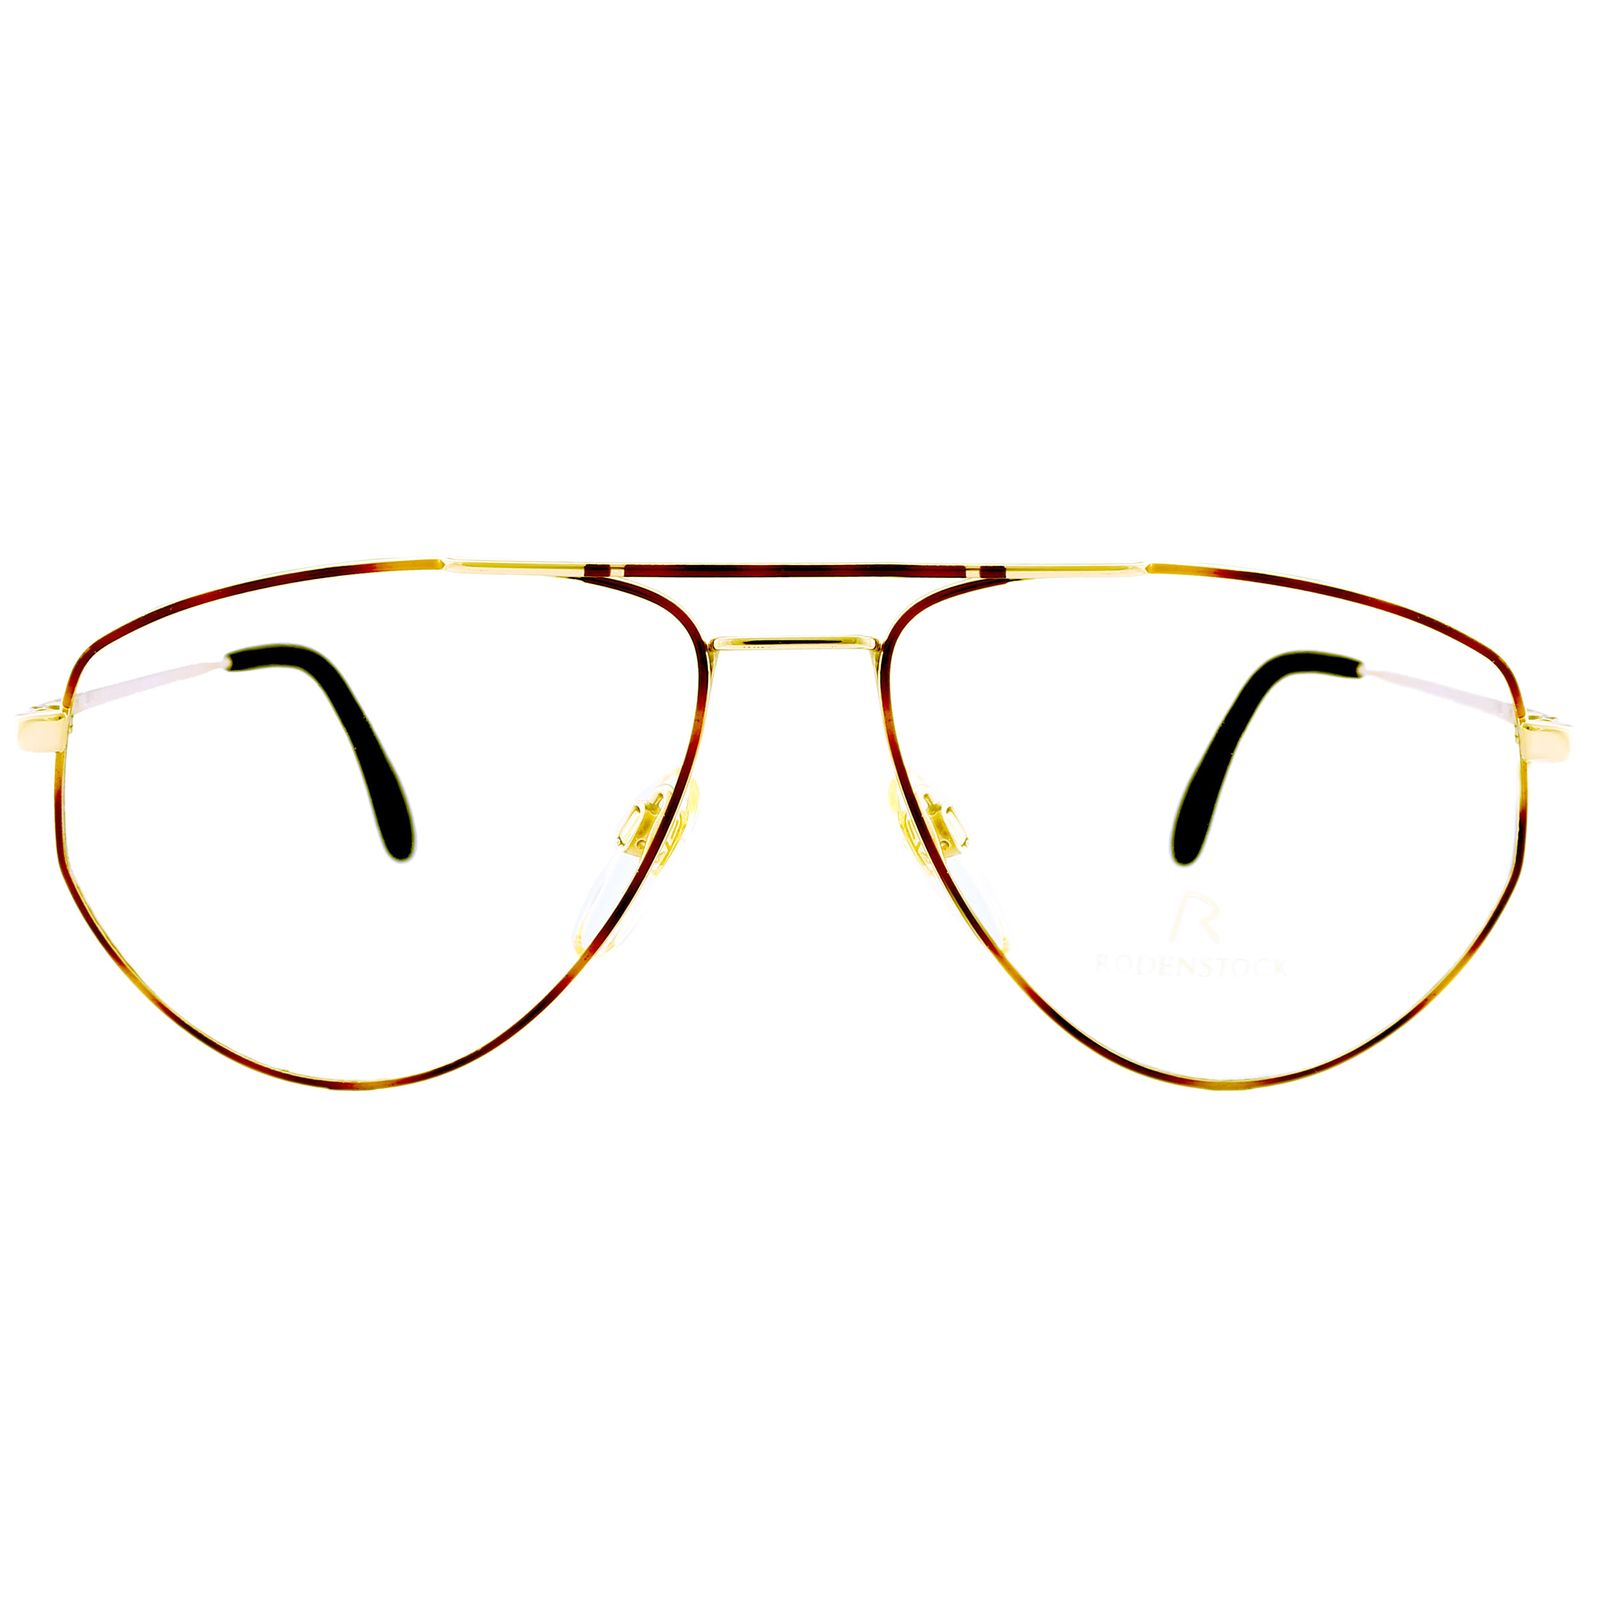 فریم عینک طبی رودن اشتوک مدل 27.53 -  - 1